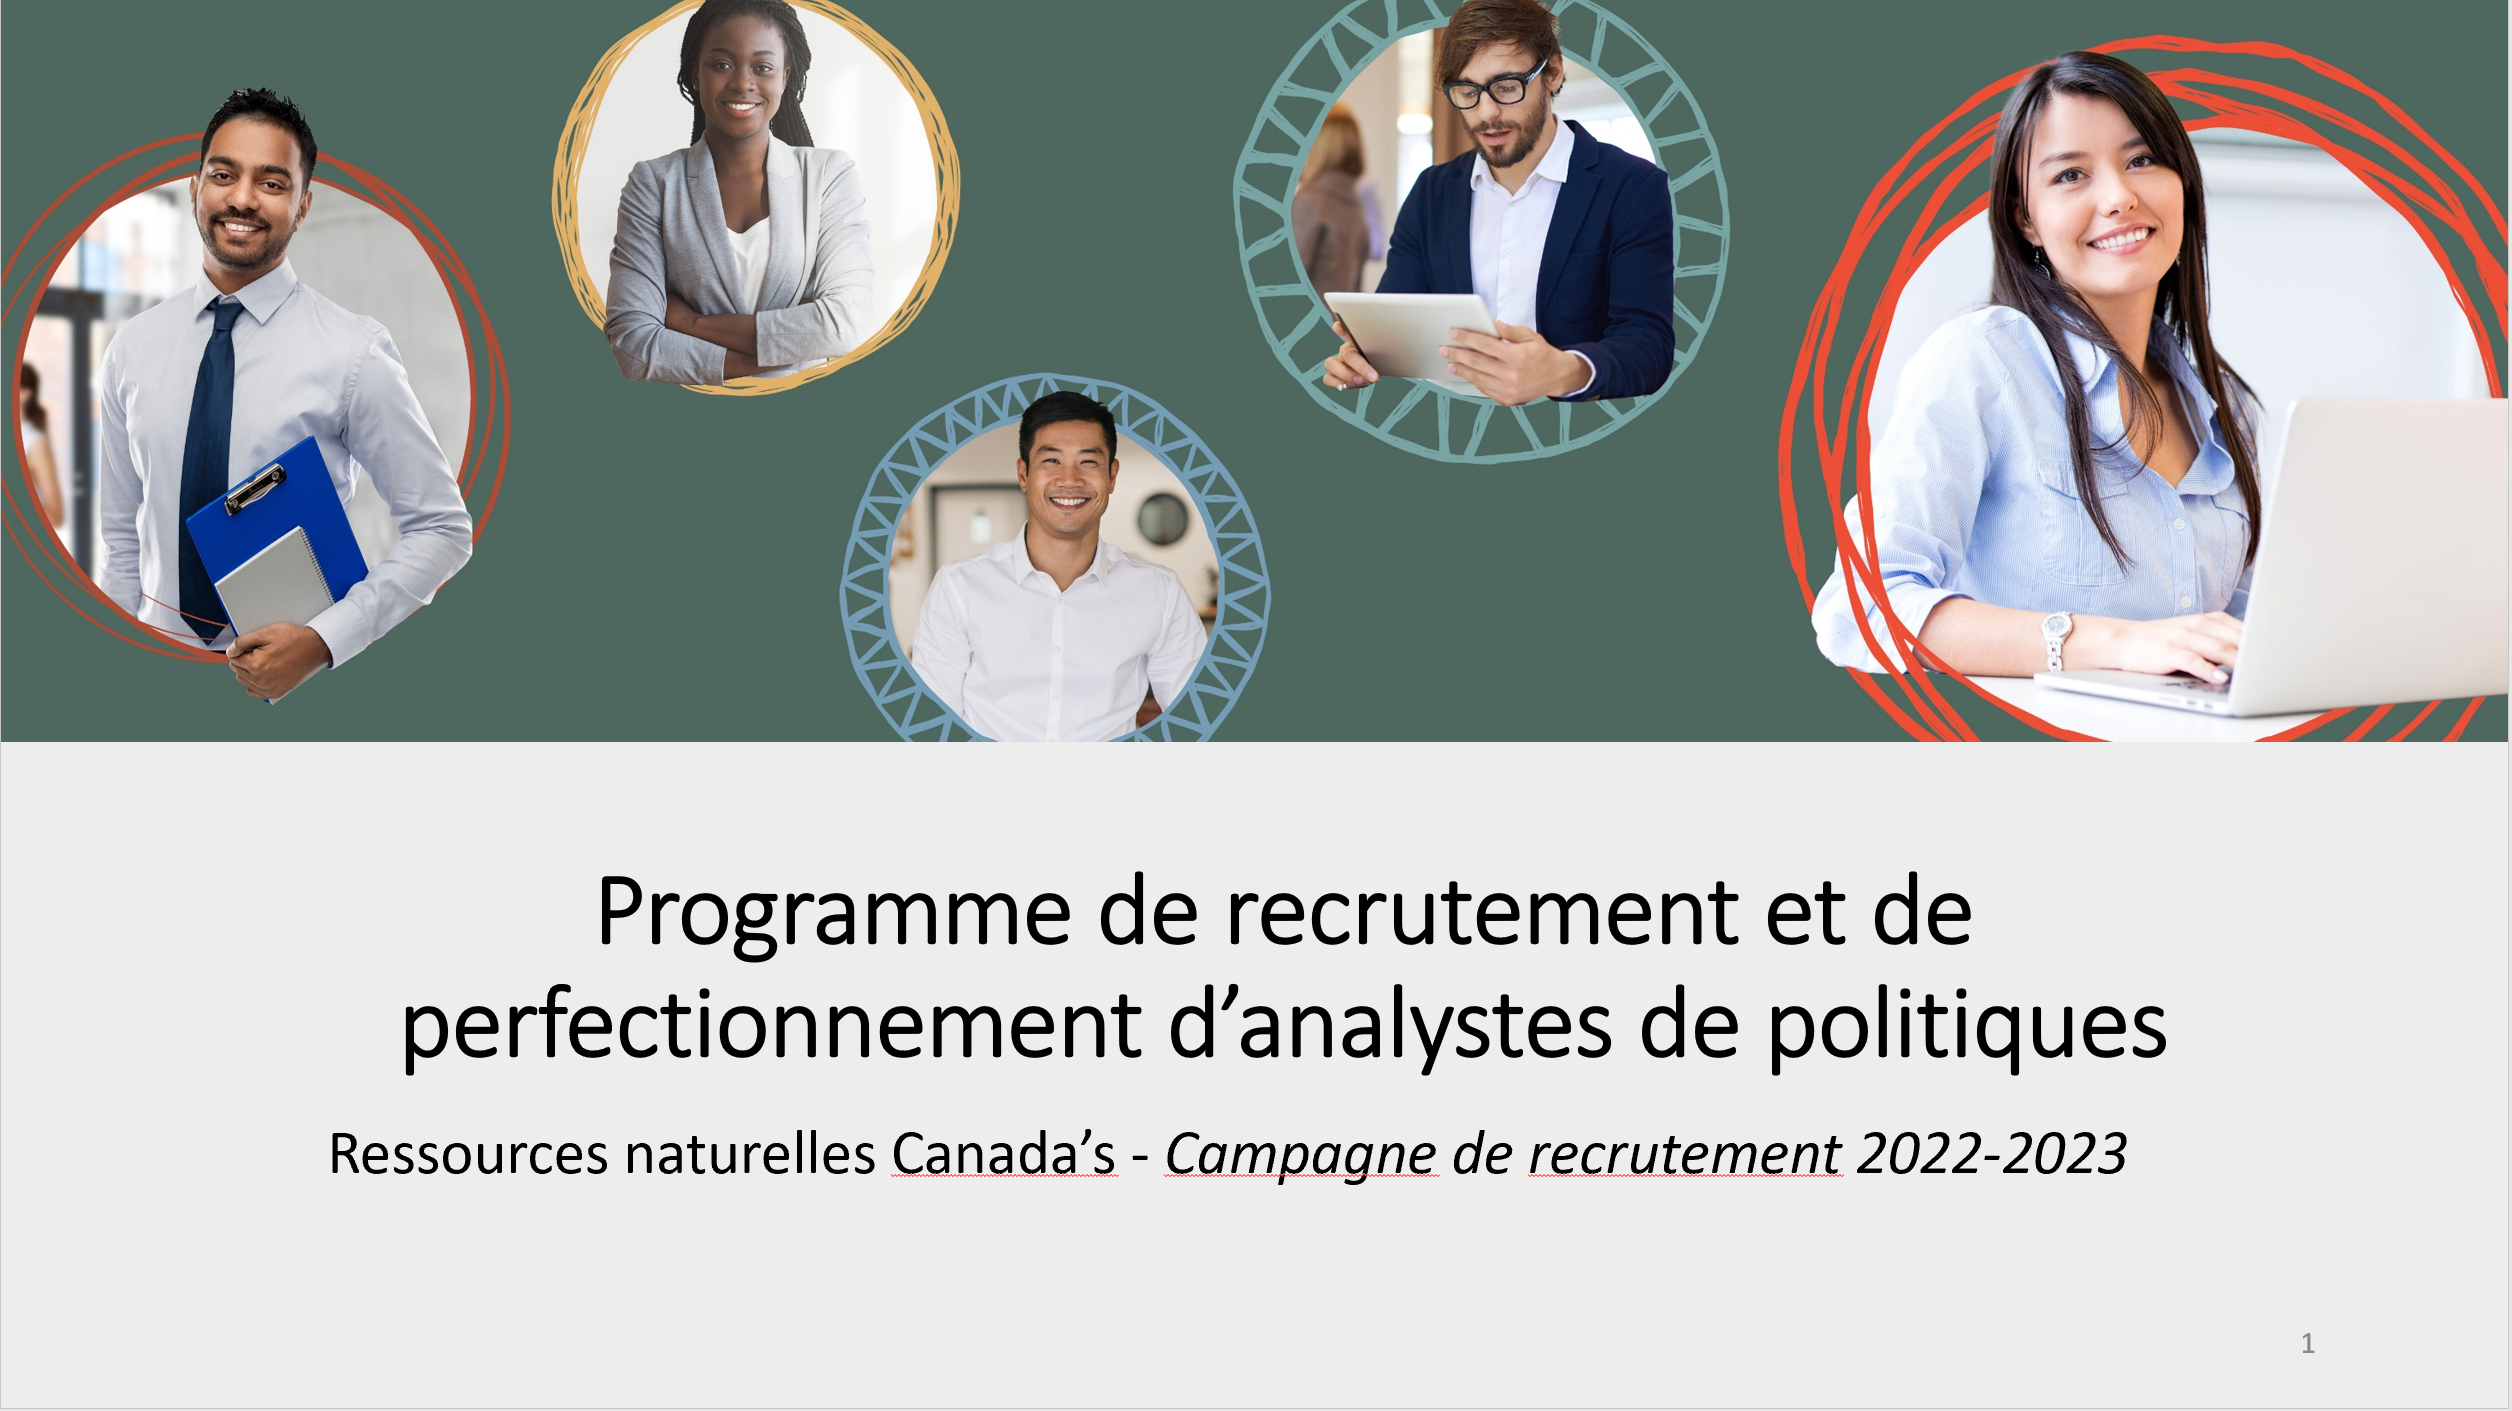 Pratiques exemplaires en matière de langues officielles dans le cadre du Programme de recrutement et de perfectionnement des analystes de politiques (PRPAP)